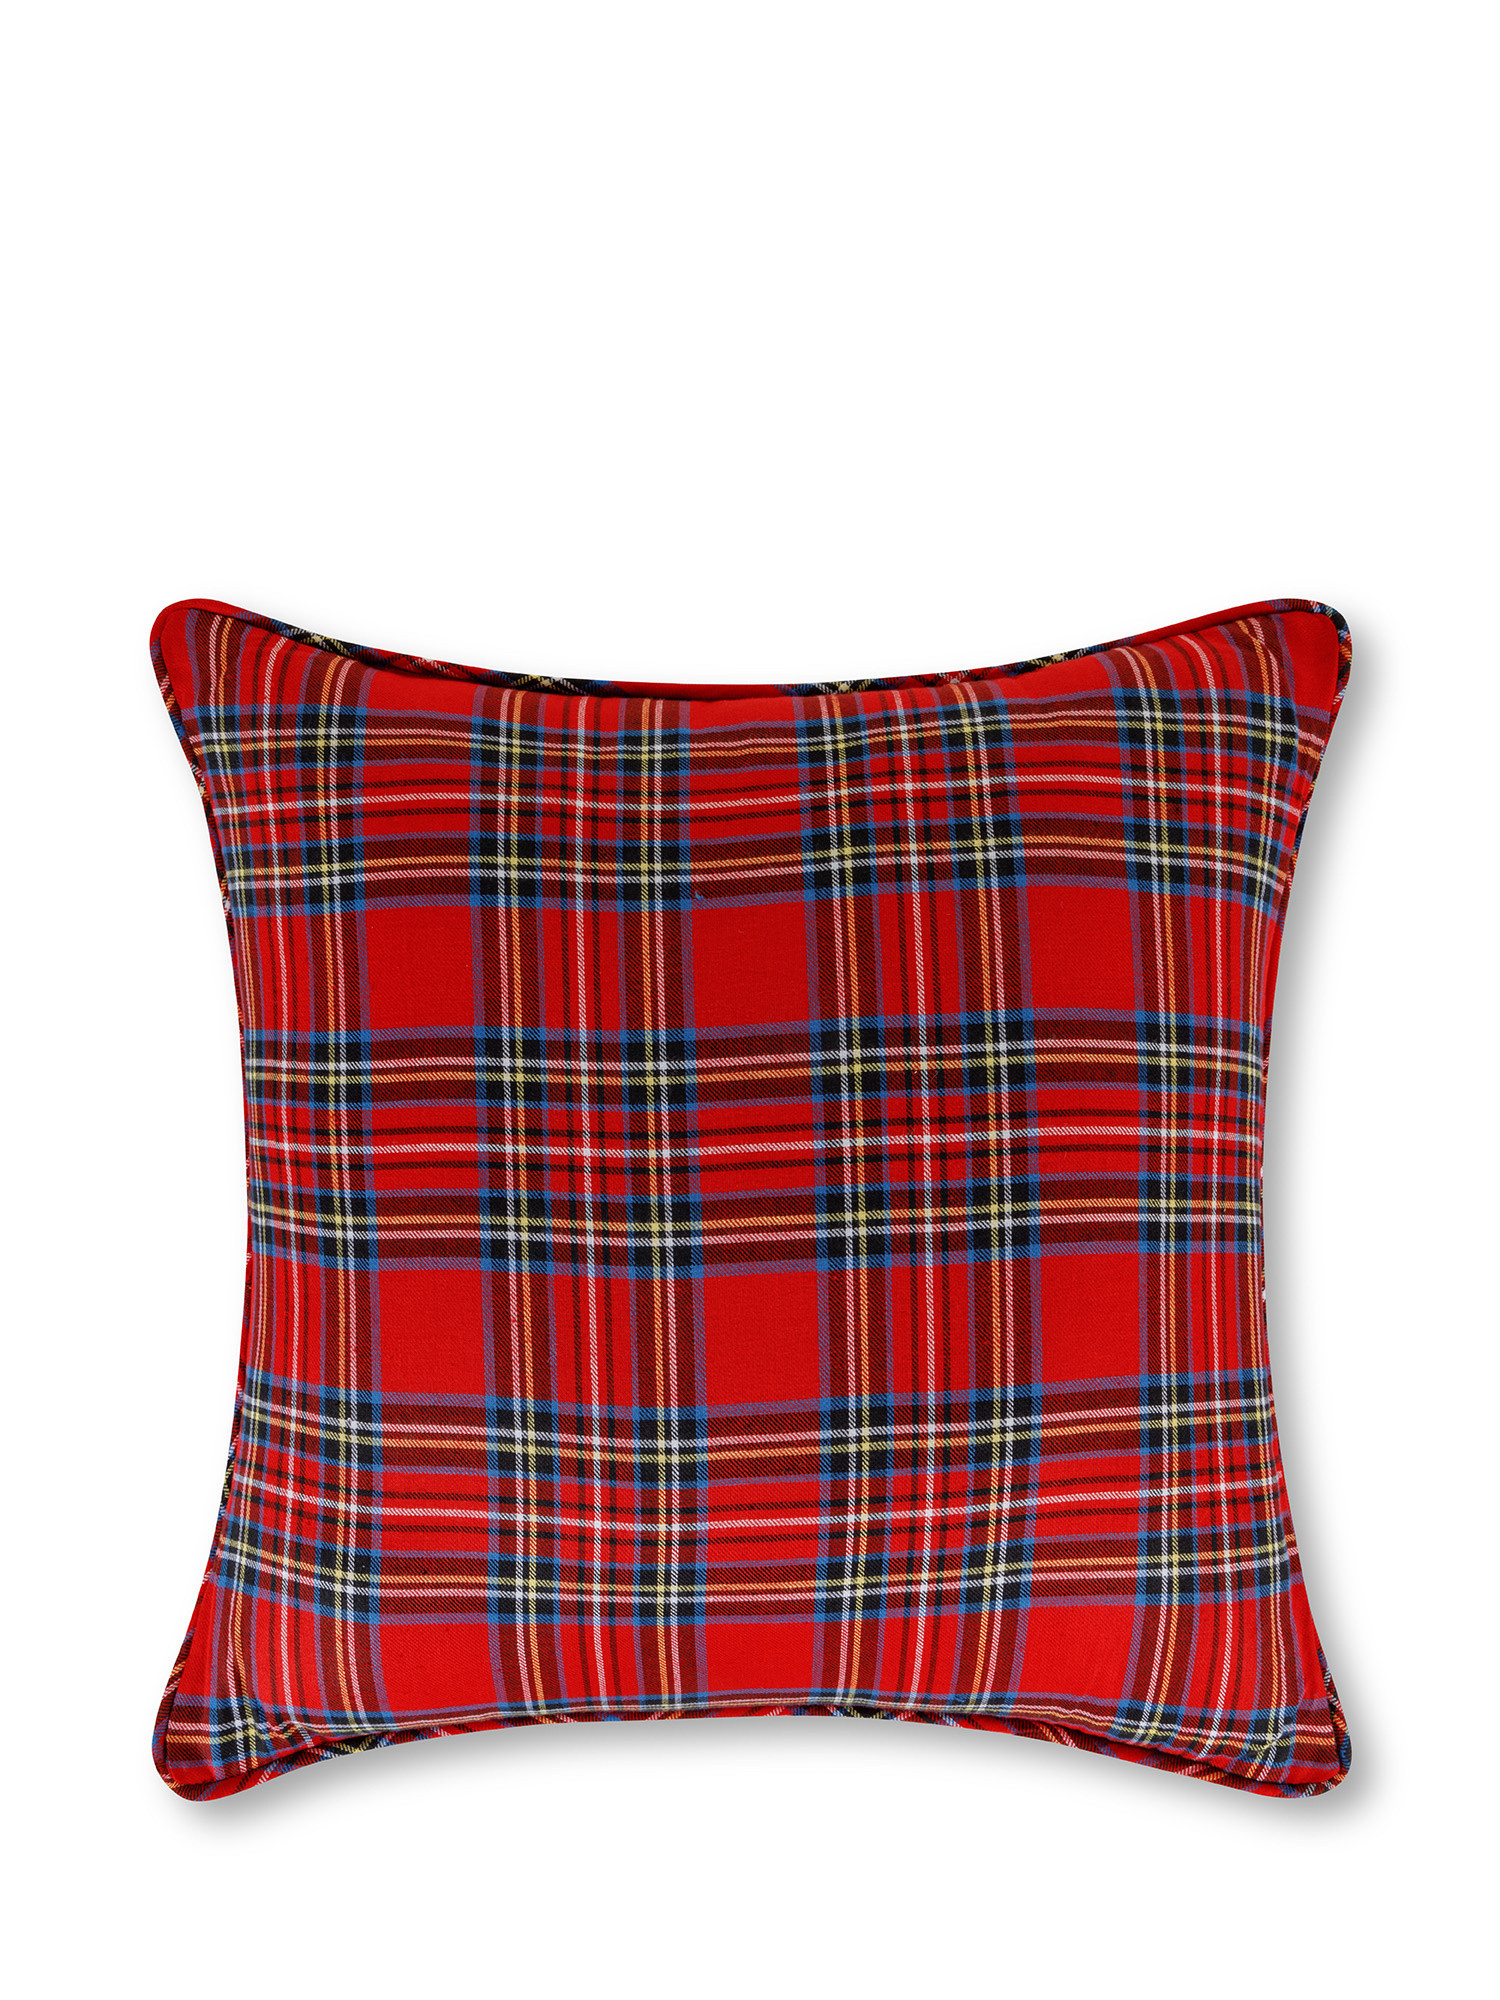 Warm tartan cotton pillow, Red, large image number 0